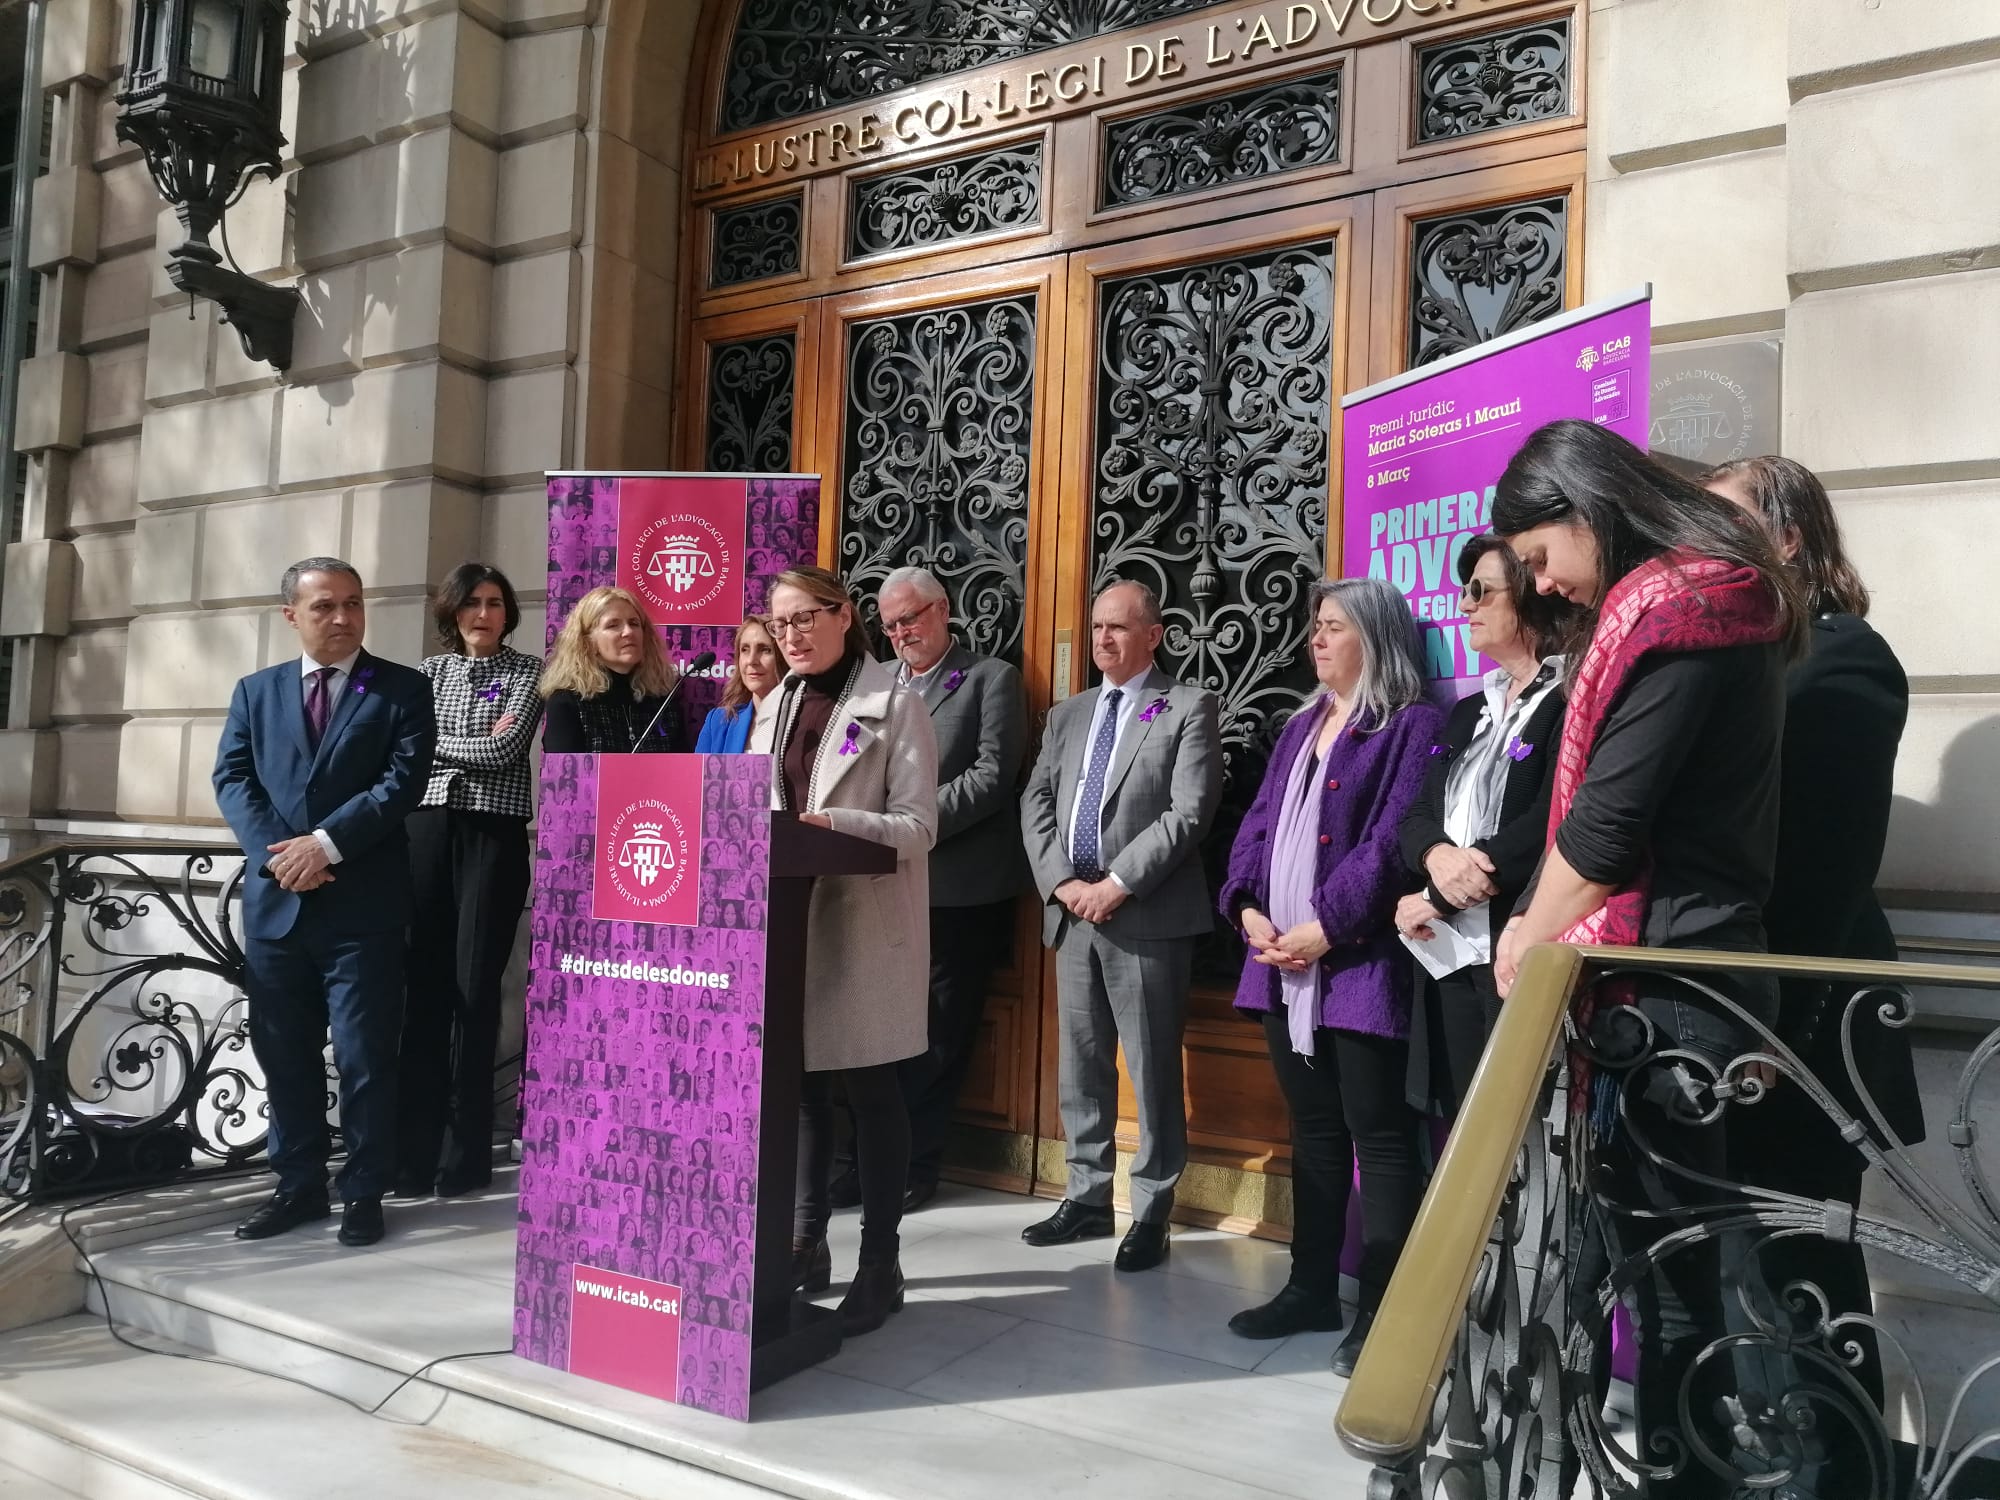 Los abogados del área de Barcelona asisten a 22 víctimas de violencia de género y machista al día